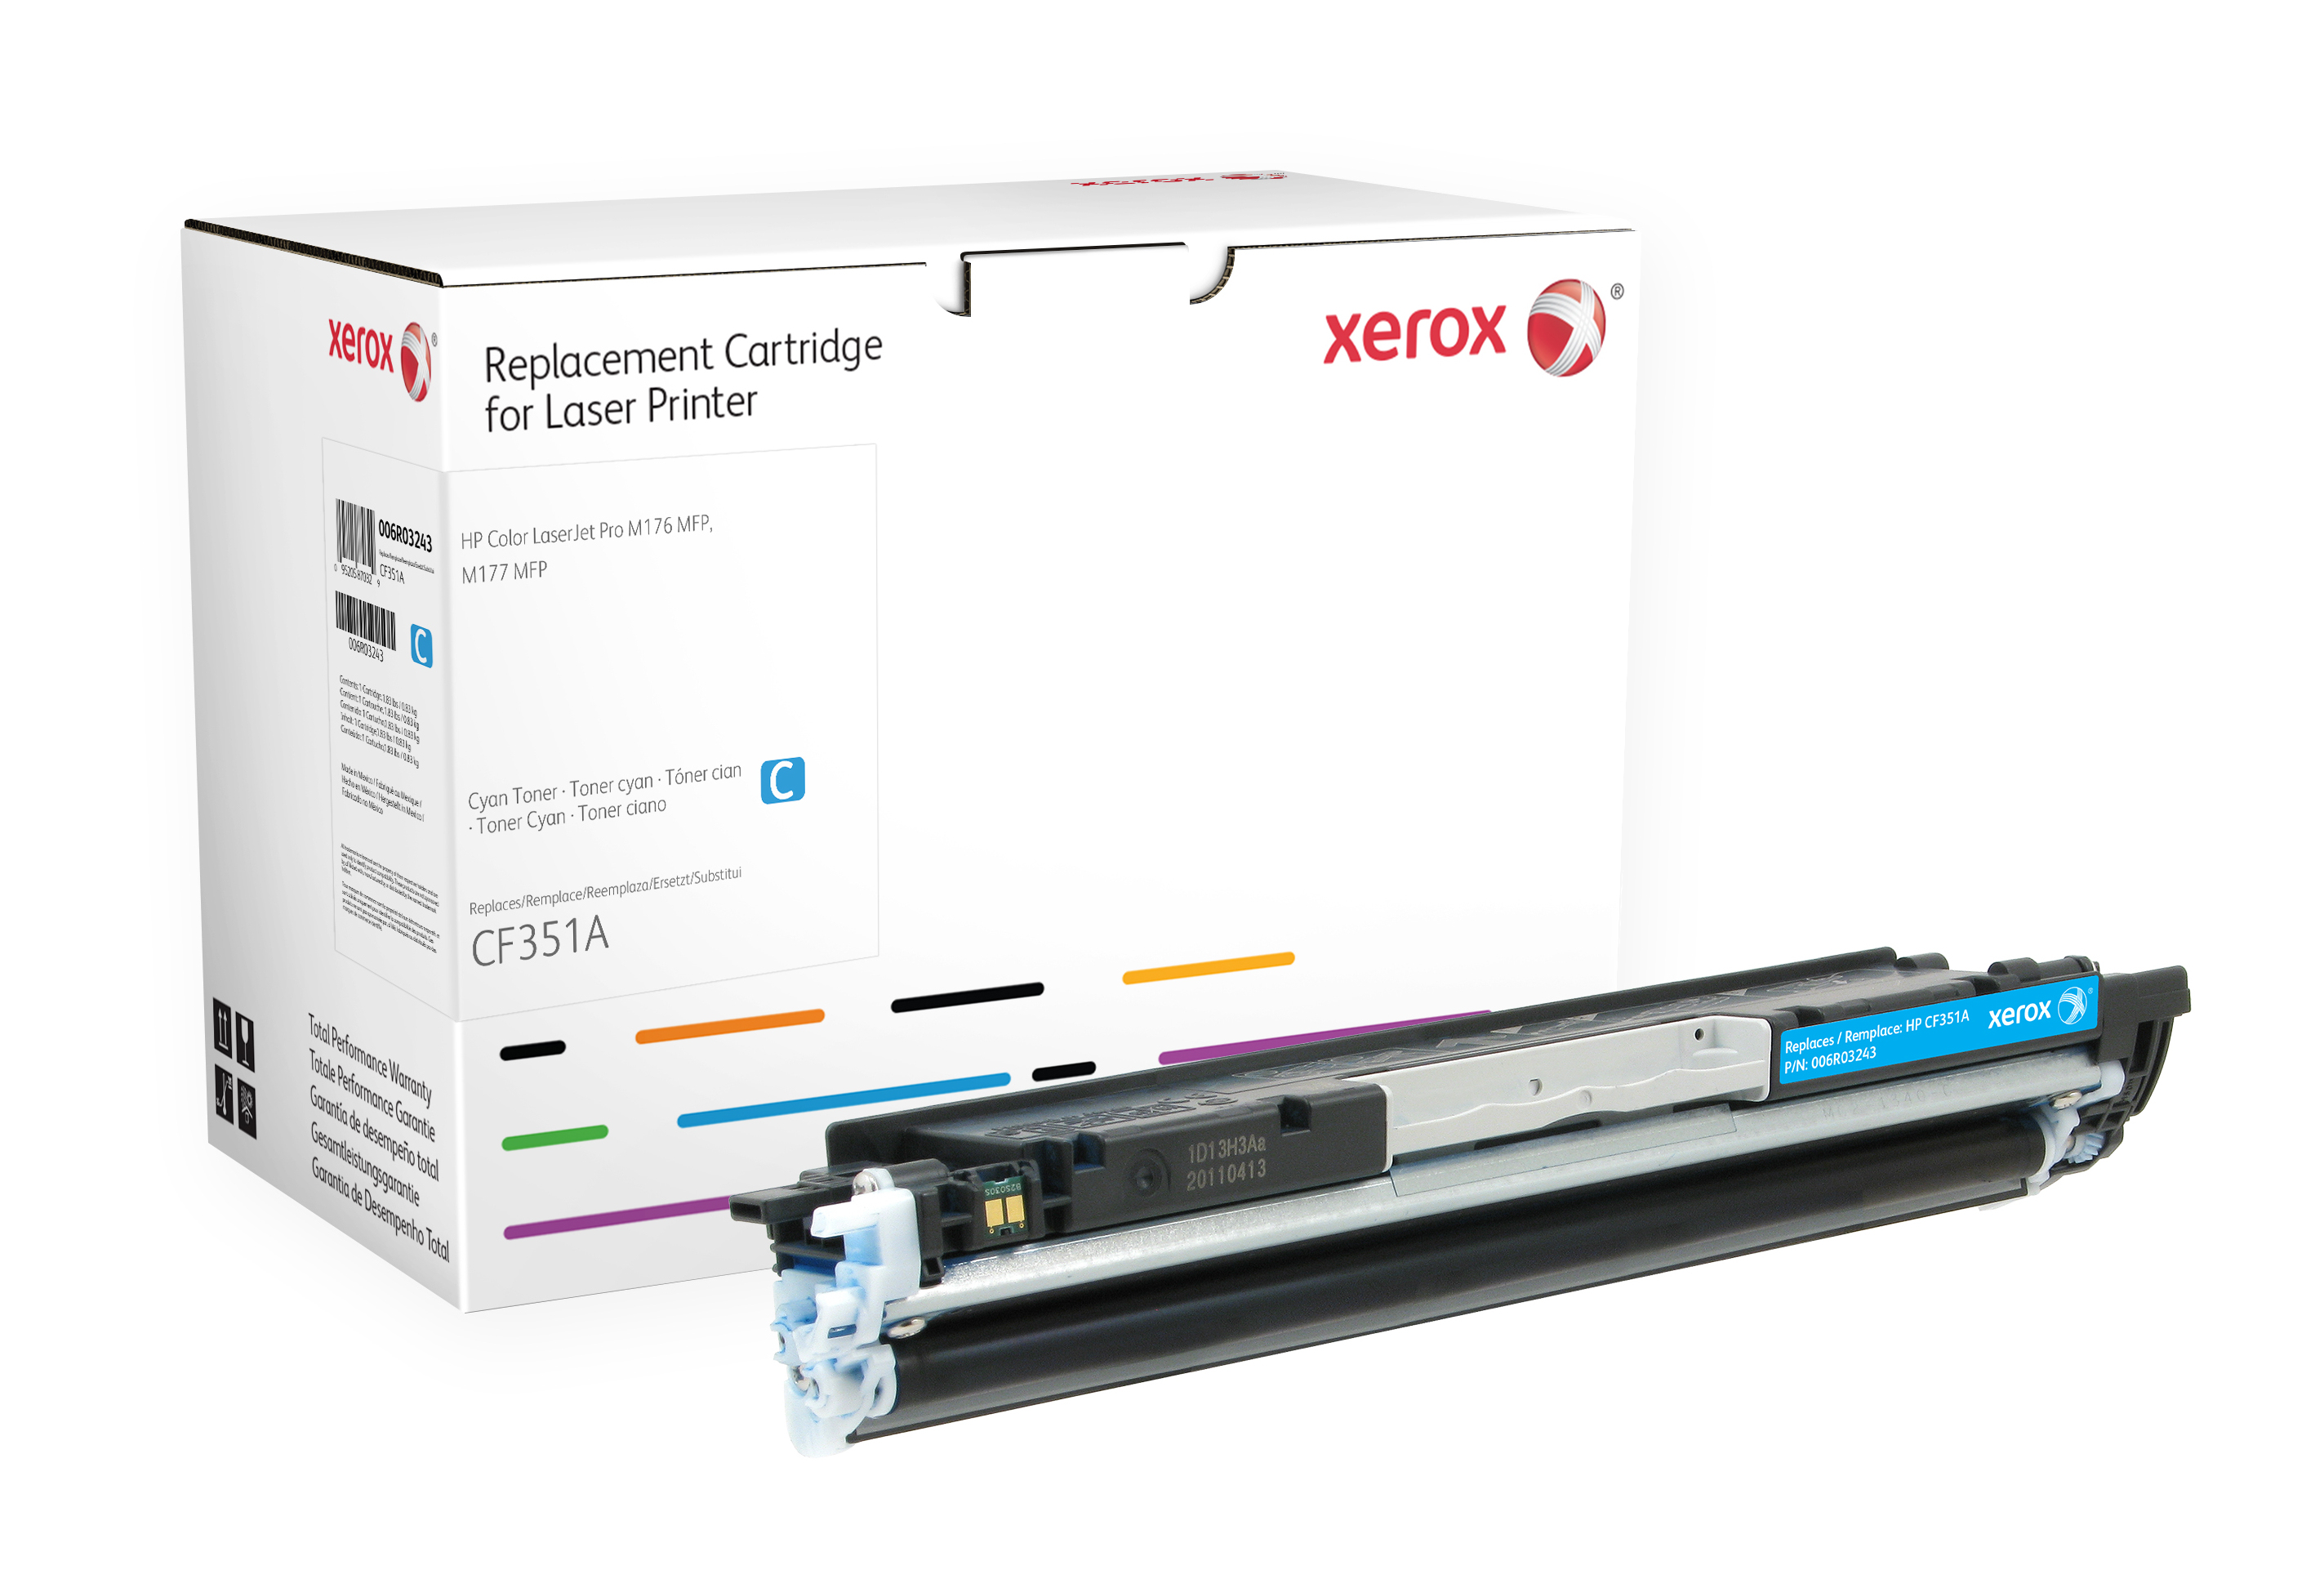 Image of Xerox Cartuccia toner ciano. Equivalente a HP CF351A. Compatibile con HP Colour LaserJet Pro M176 MFP, Colour LaserJet Pro M177 MFP